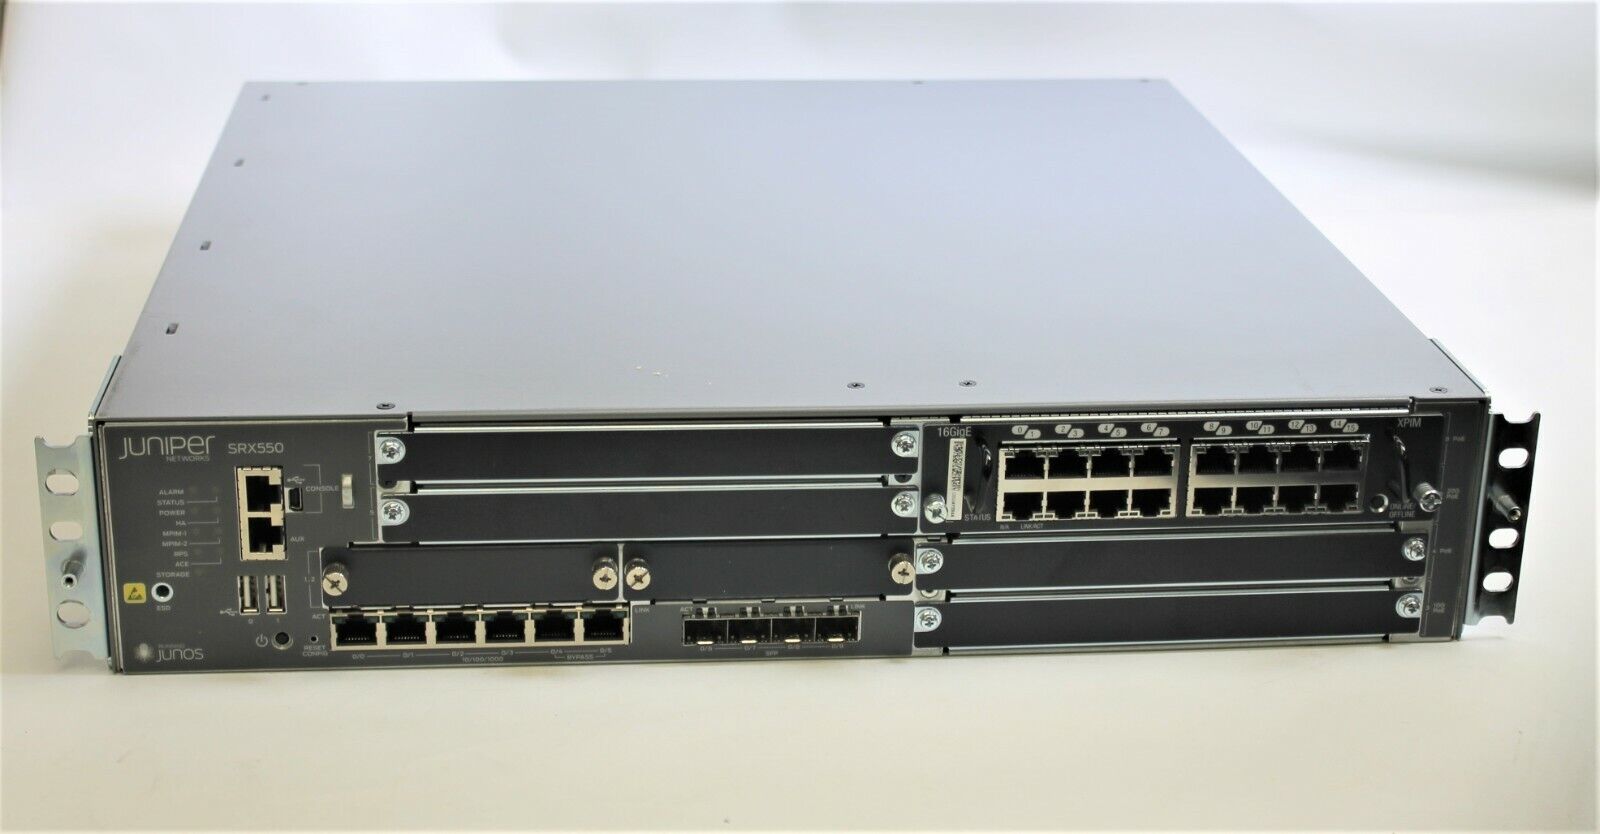 Juniper SRX550 Services Gateway Firewall SRX550-645AP W/ SRX-GP-16GE + Dual PSU